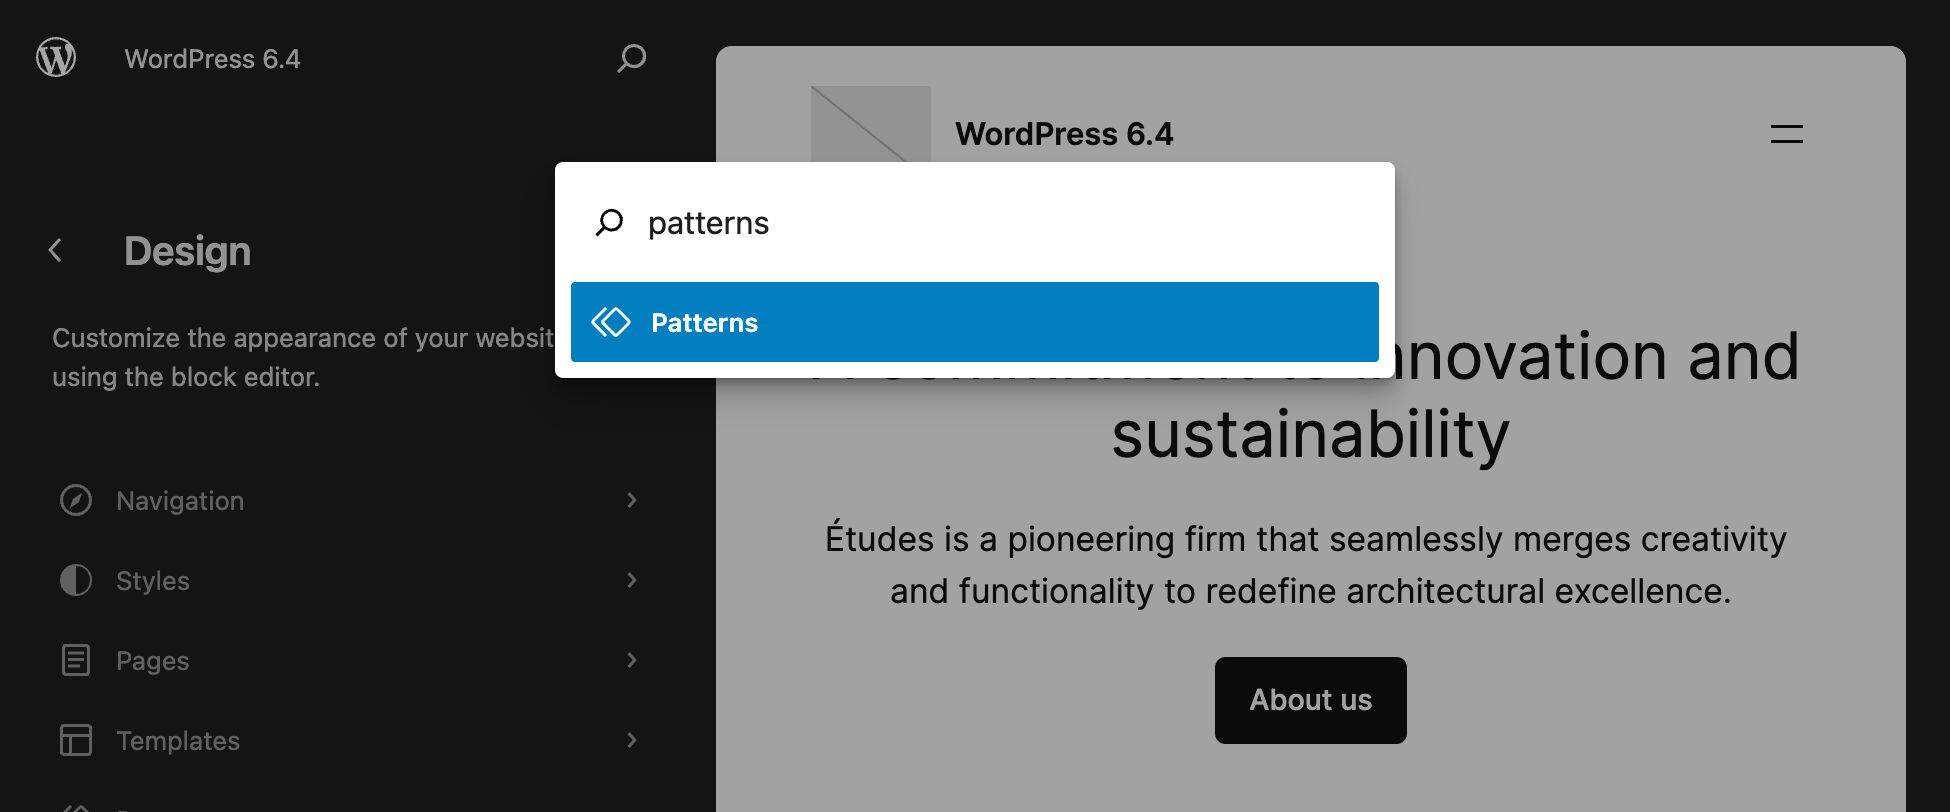 在 WordPress 6.4 中搜索样机